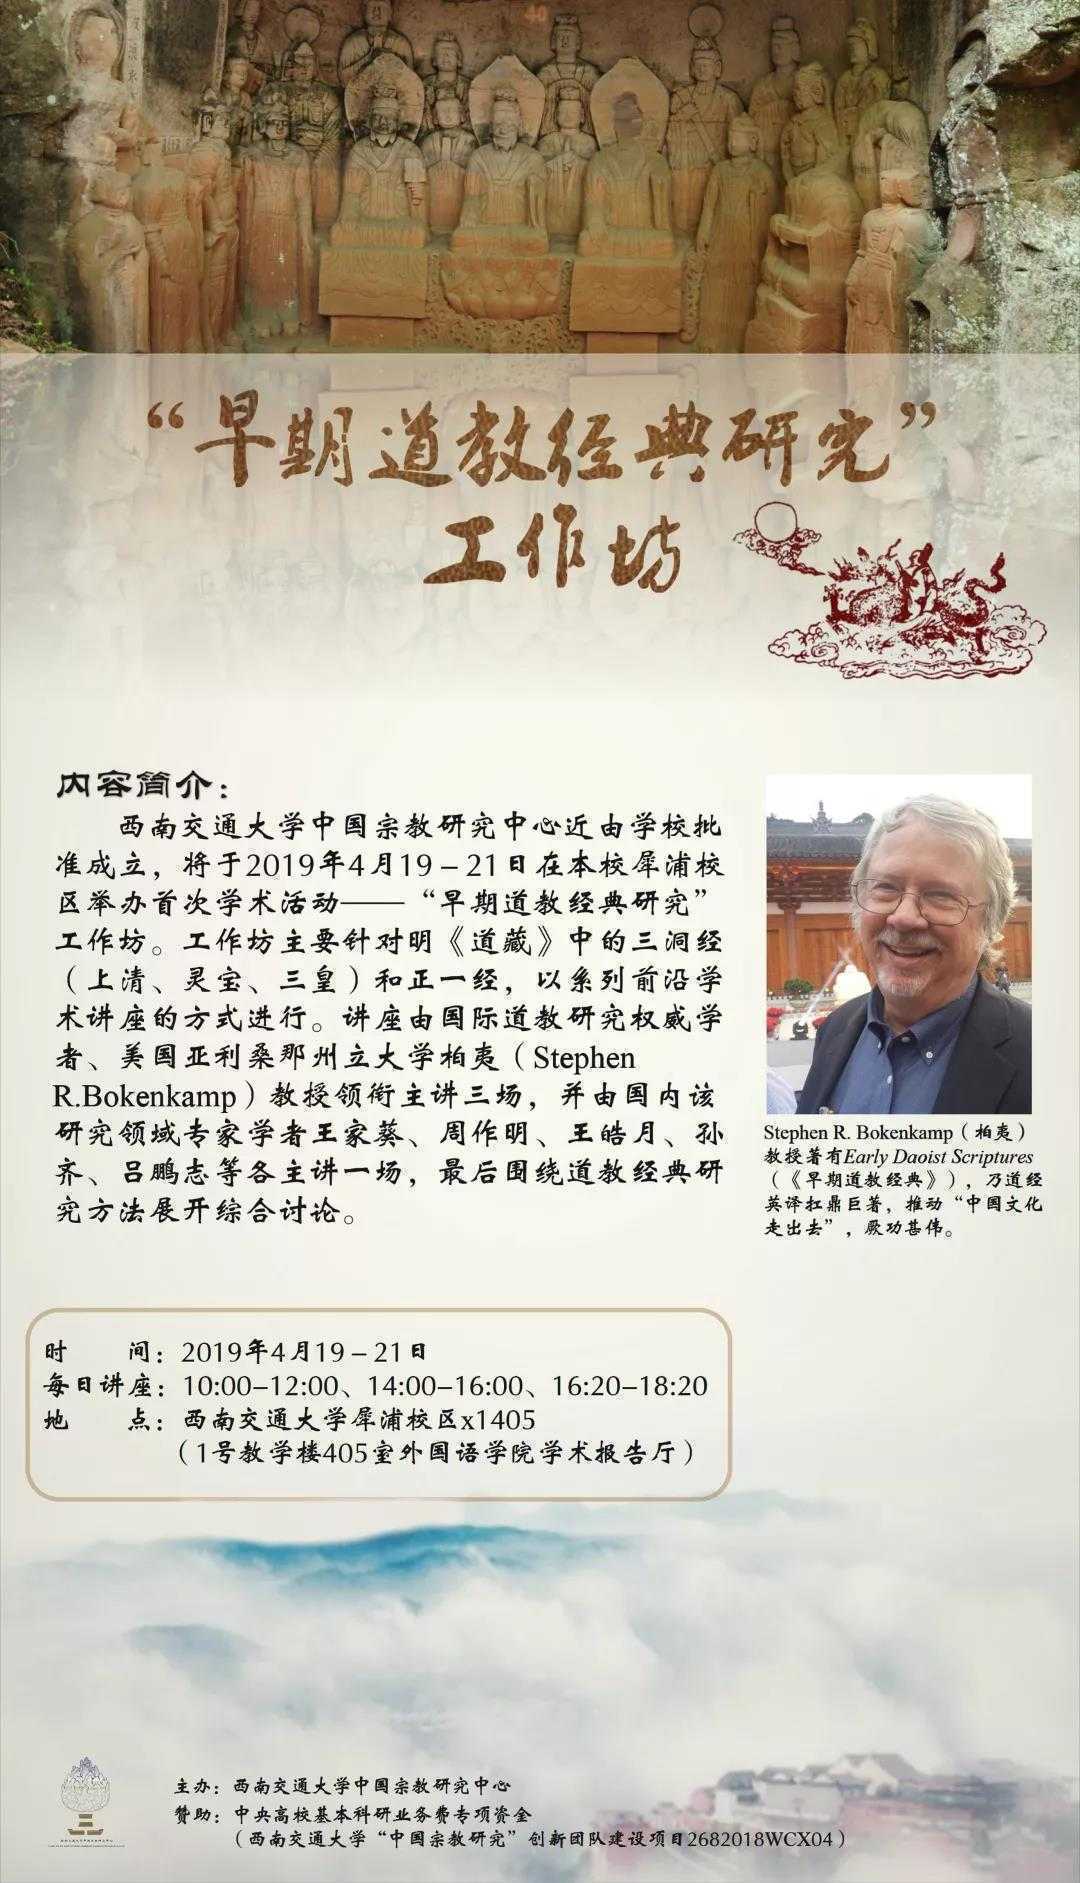 西南交大中国宗教研究中心将举办“早期道教经典研究”工作坊